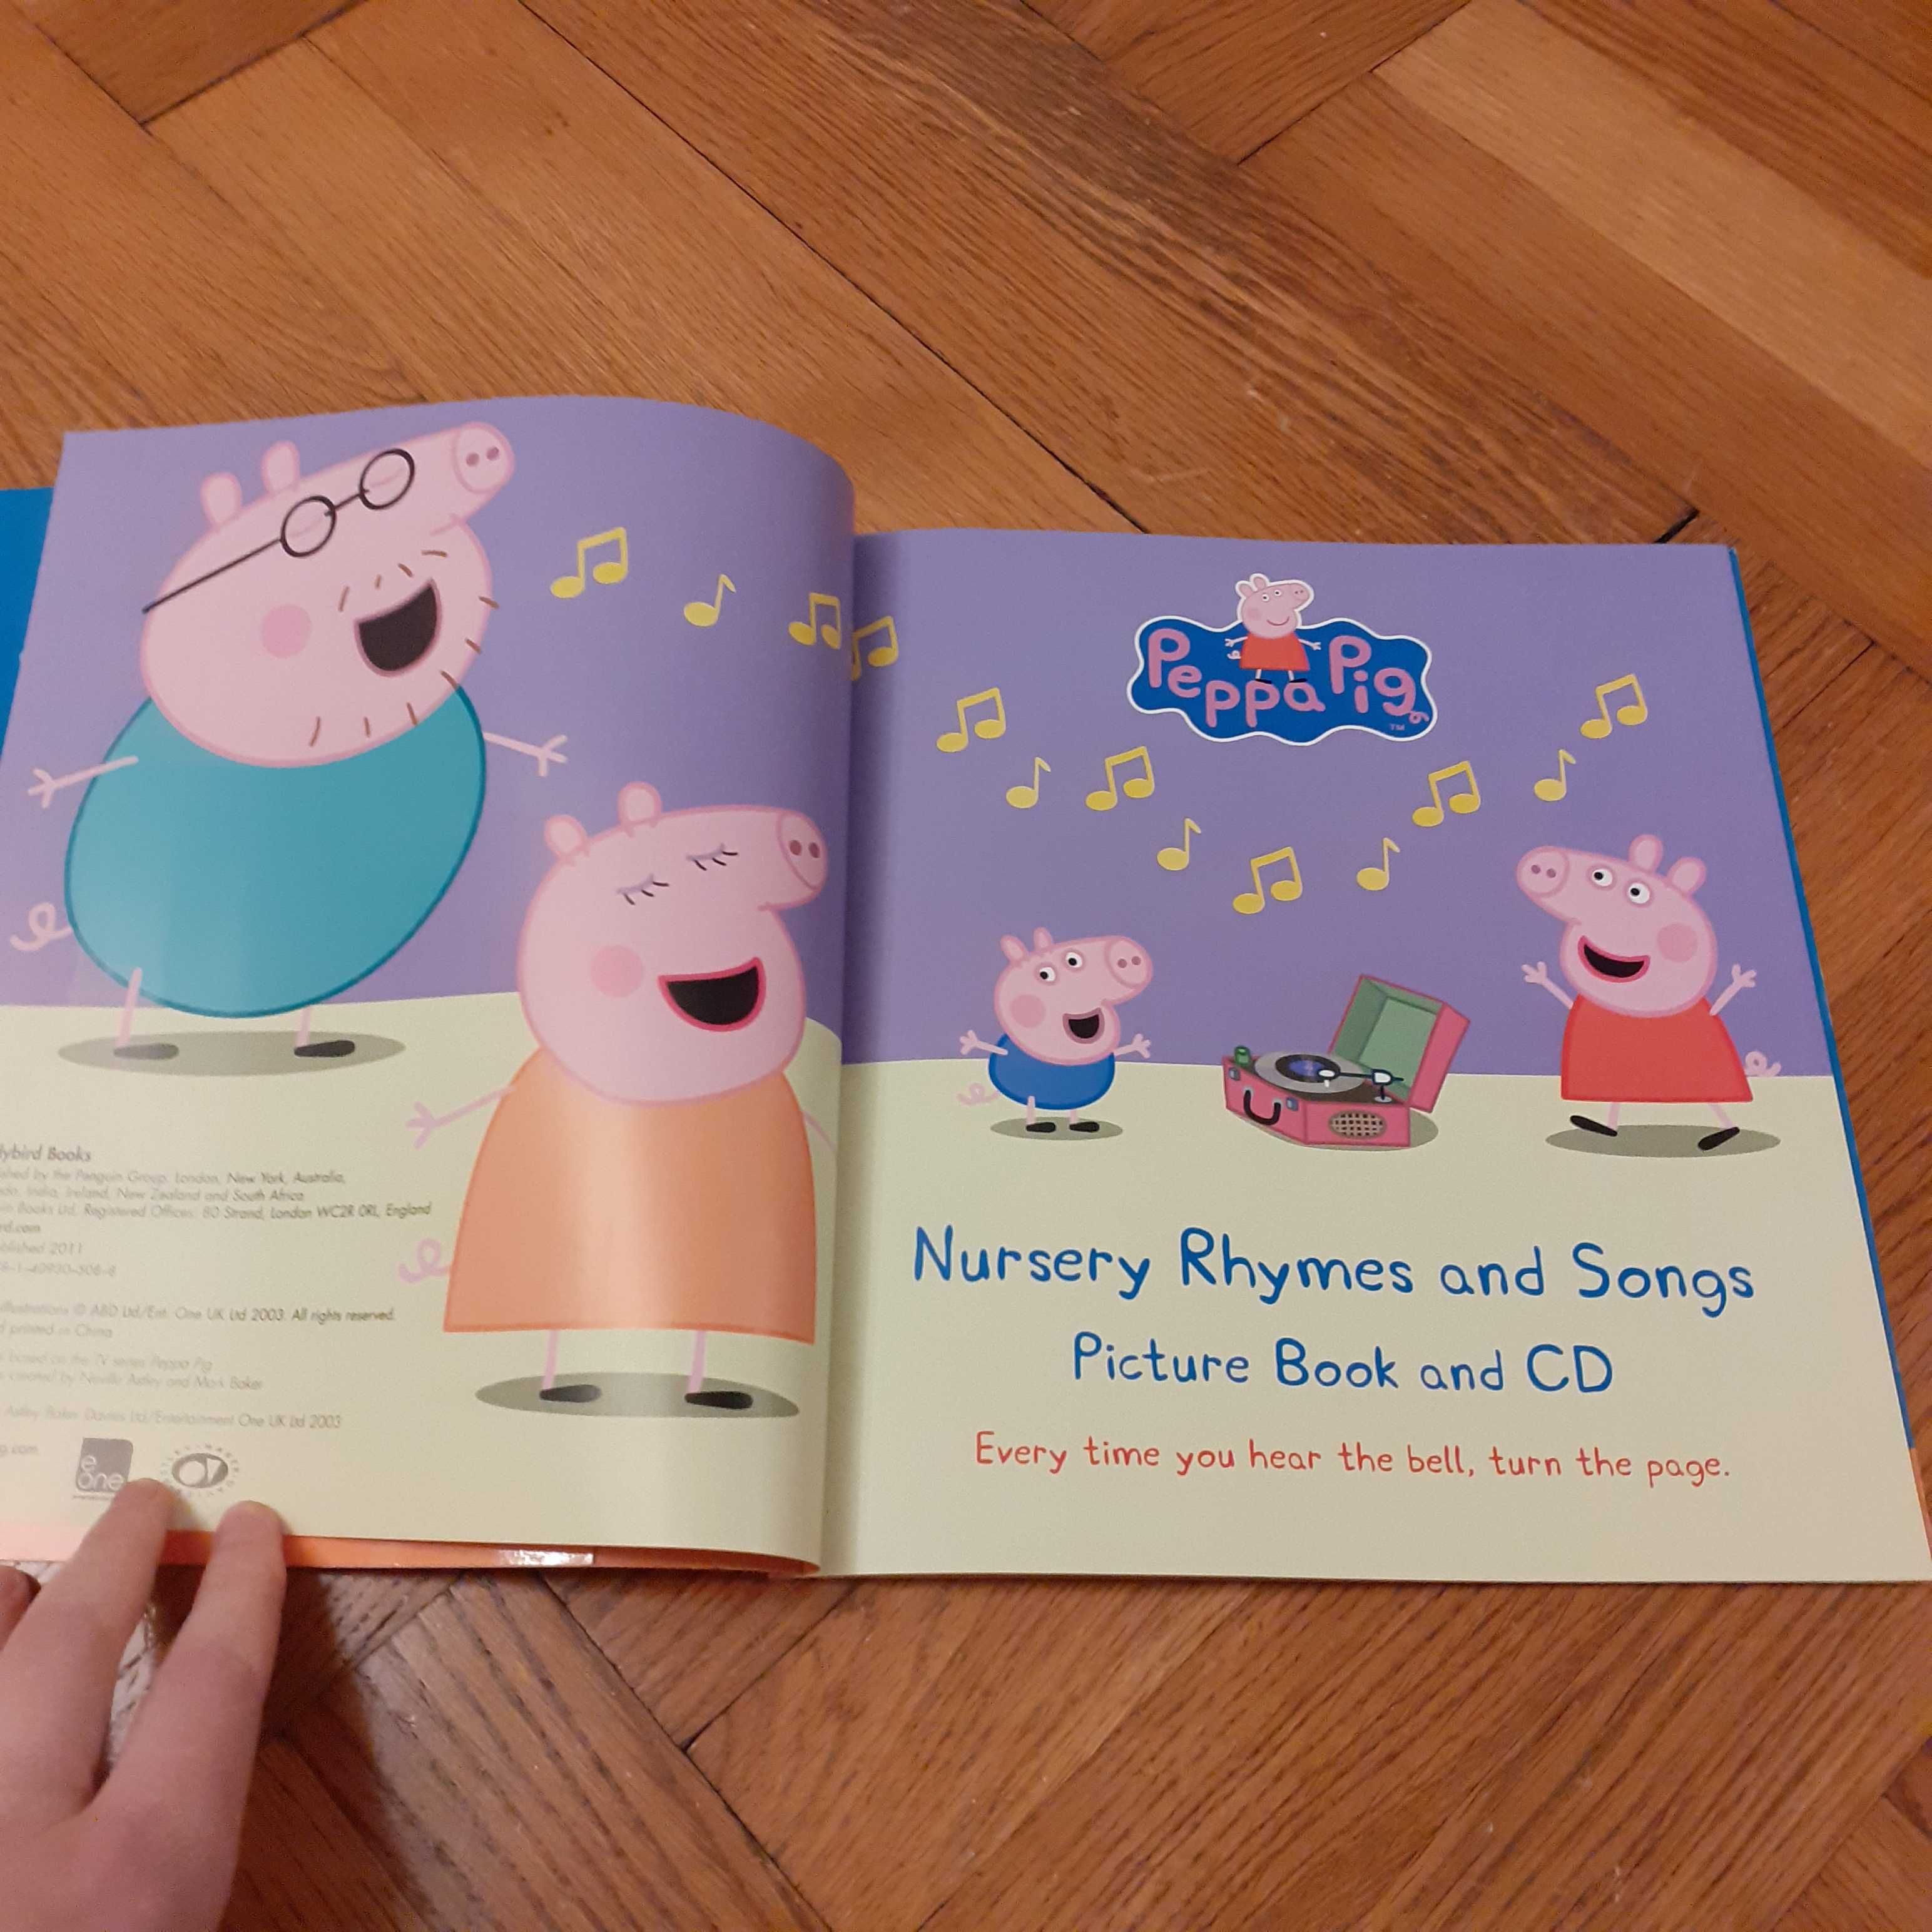 2 carti: Peppa Pig cu Cd cantece engleza + Crestem citind la 4 ani